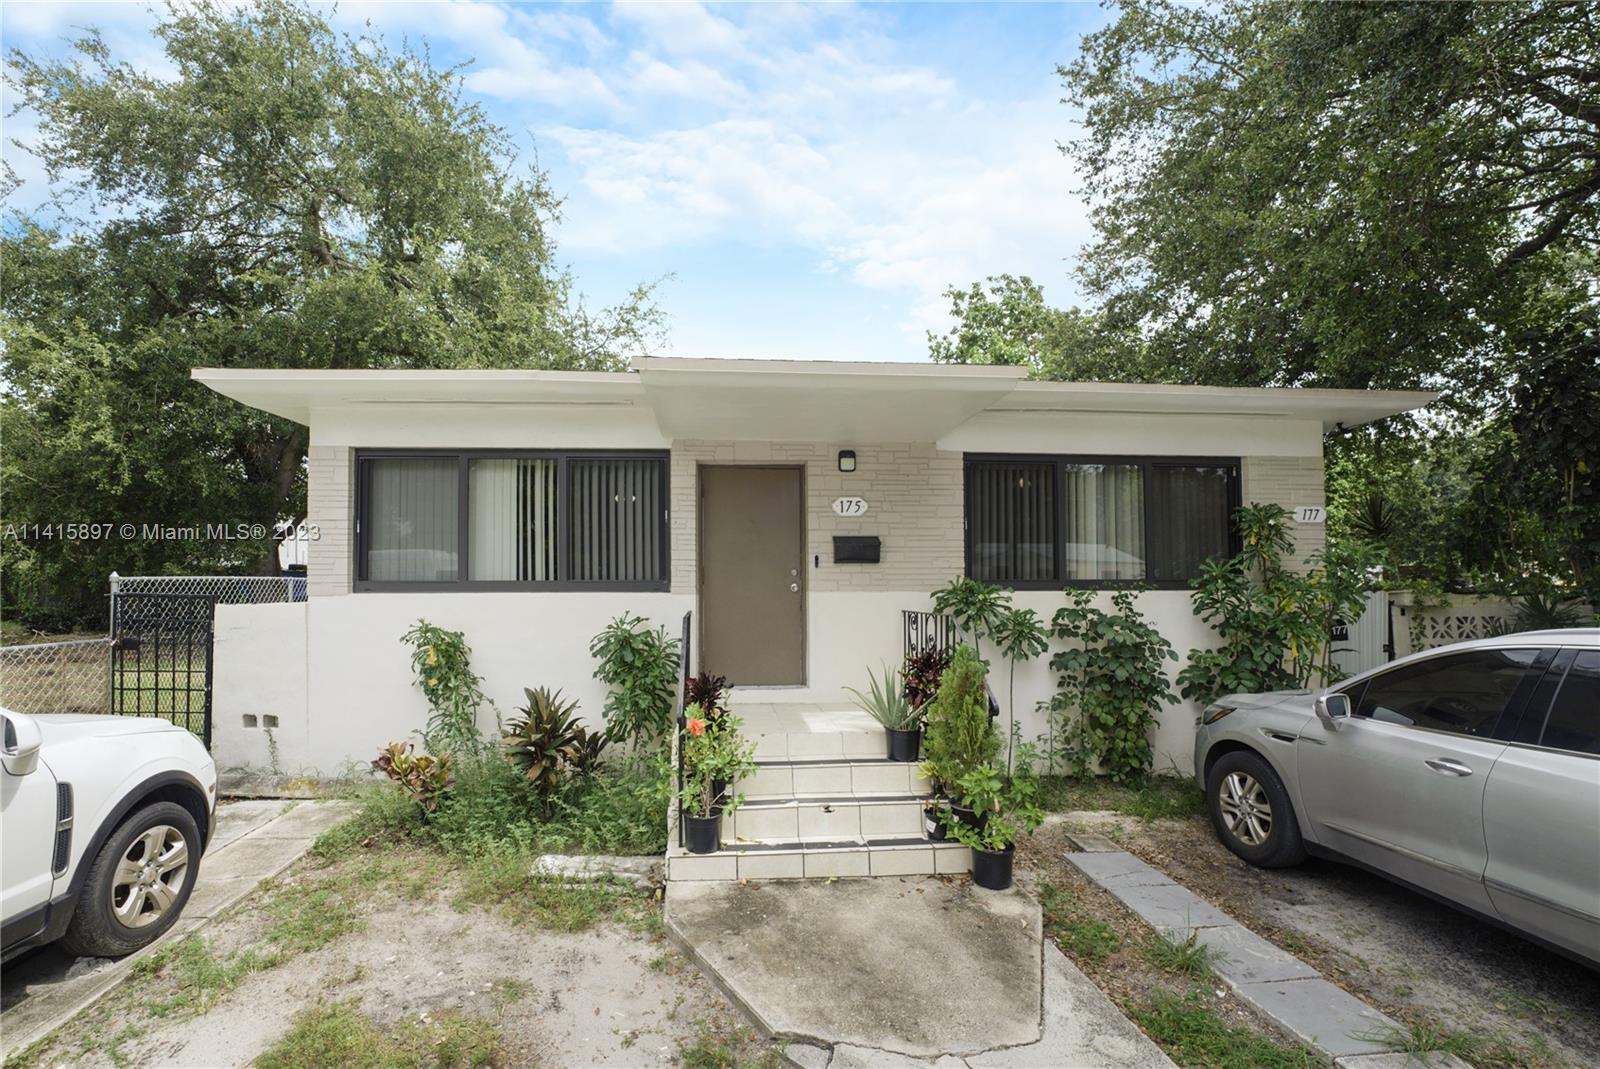 Rental Property at 175 Nw 68th St, Miami, Broward County, Florida -  - $675,000 MO.